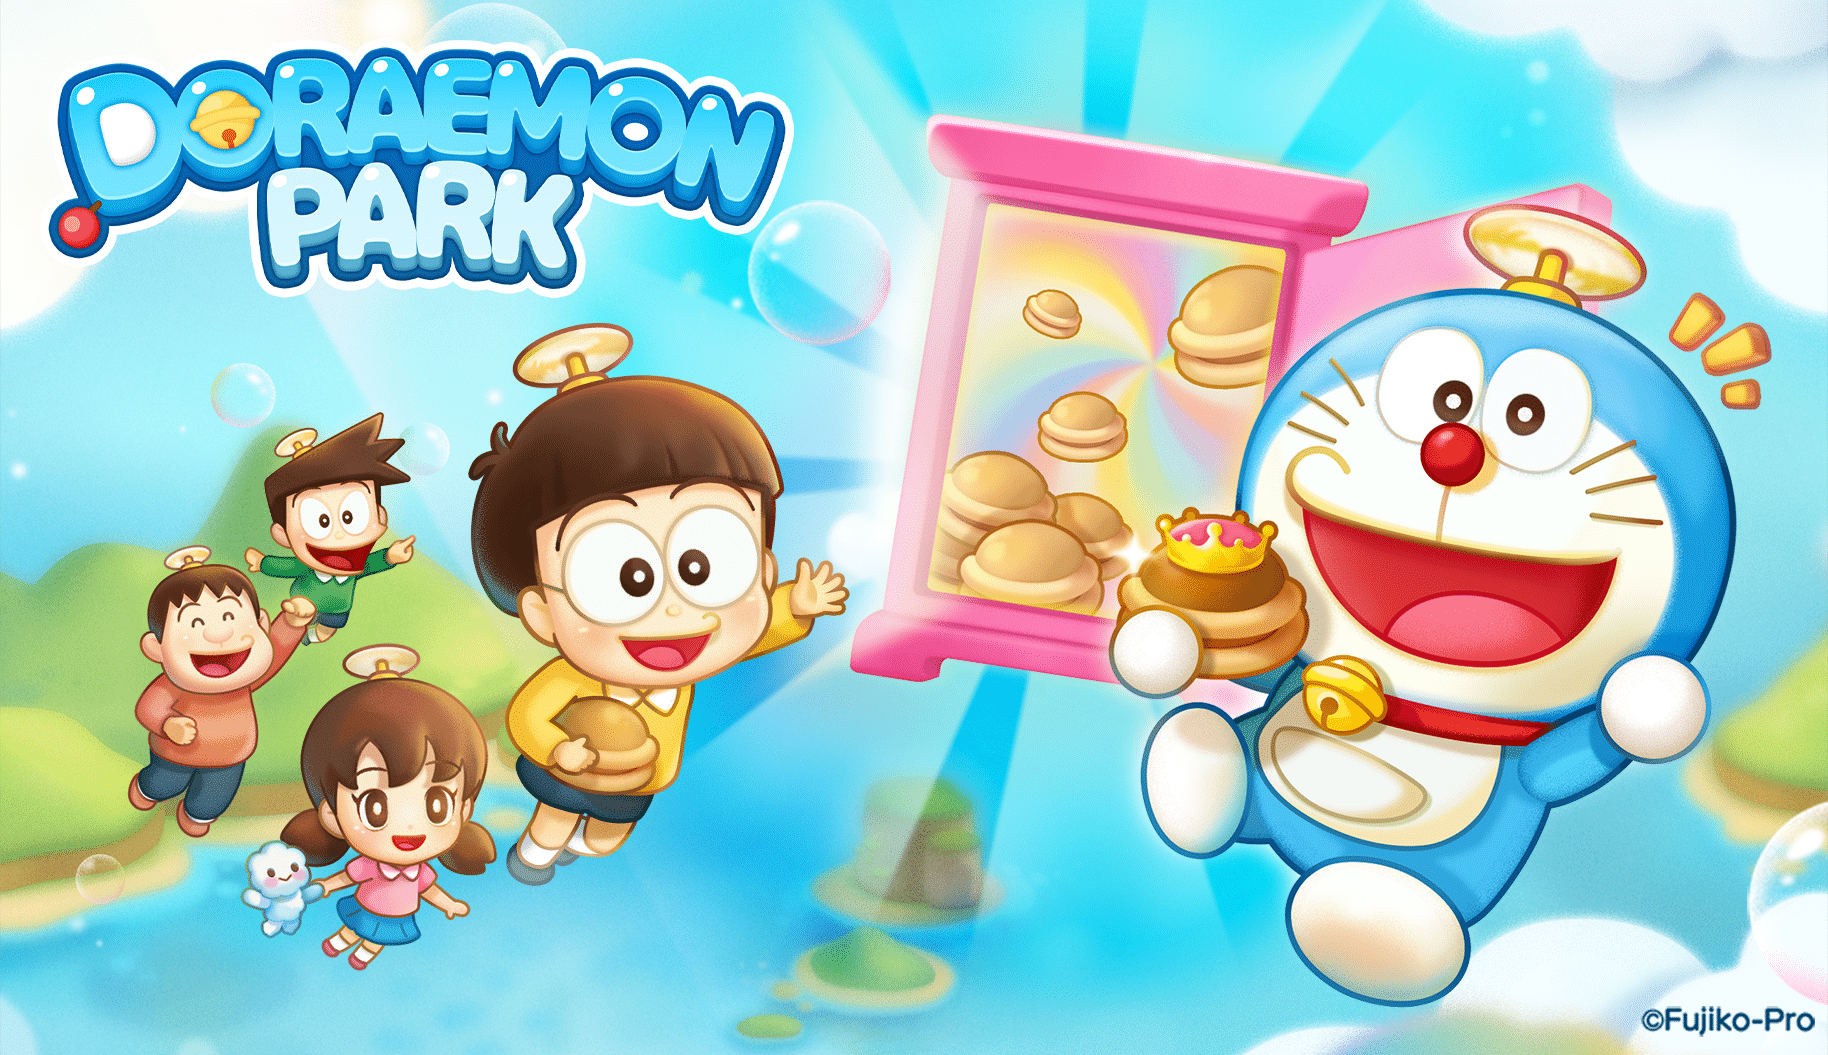 LINE GAMES เตรียมเปิดเกมพัชเชิลมือถือ “LINE Doraemon Park” ลงทะเบียนล่วงหน้าได้แล้ววันนี้